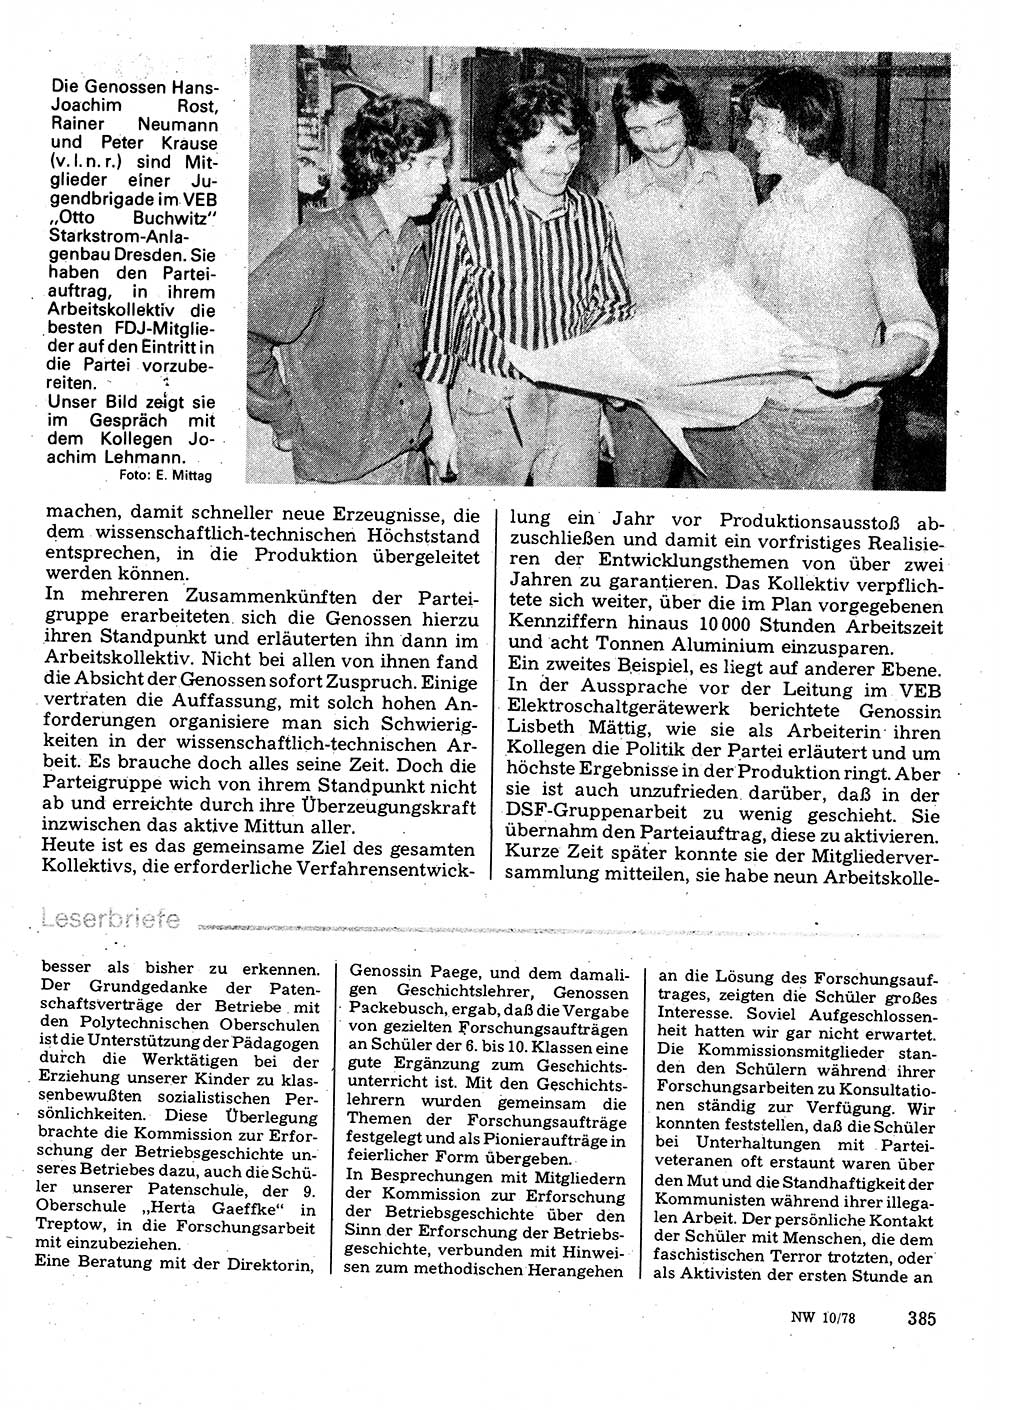 Neuer Weg (NW), Organ des Zentralkomitees (ZK) der SED (Sozialistische Einheitspartei Deutschlands) für Fragen des Parteilebens, 33. Jahrgang [Deutsche Demokratische Republik (DDR)] 1978, Seite 385 (NW ZK SED DDR 1978, S. 385)